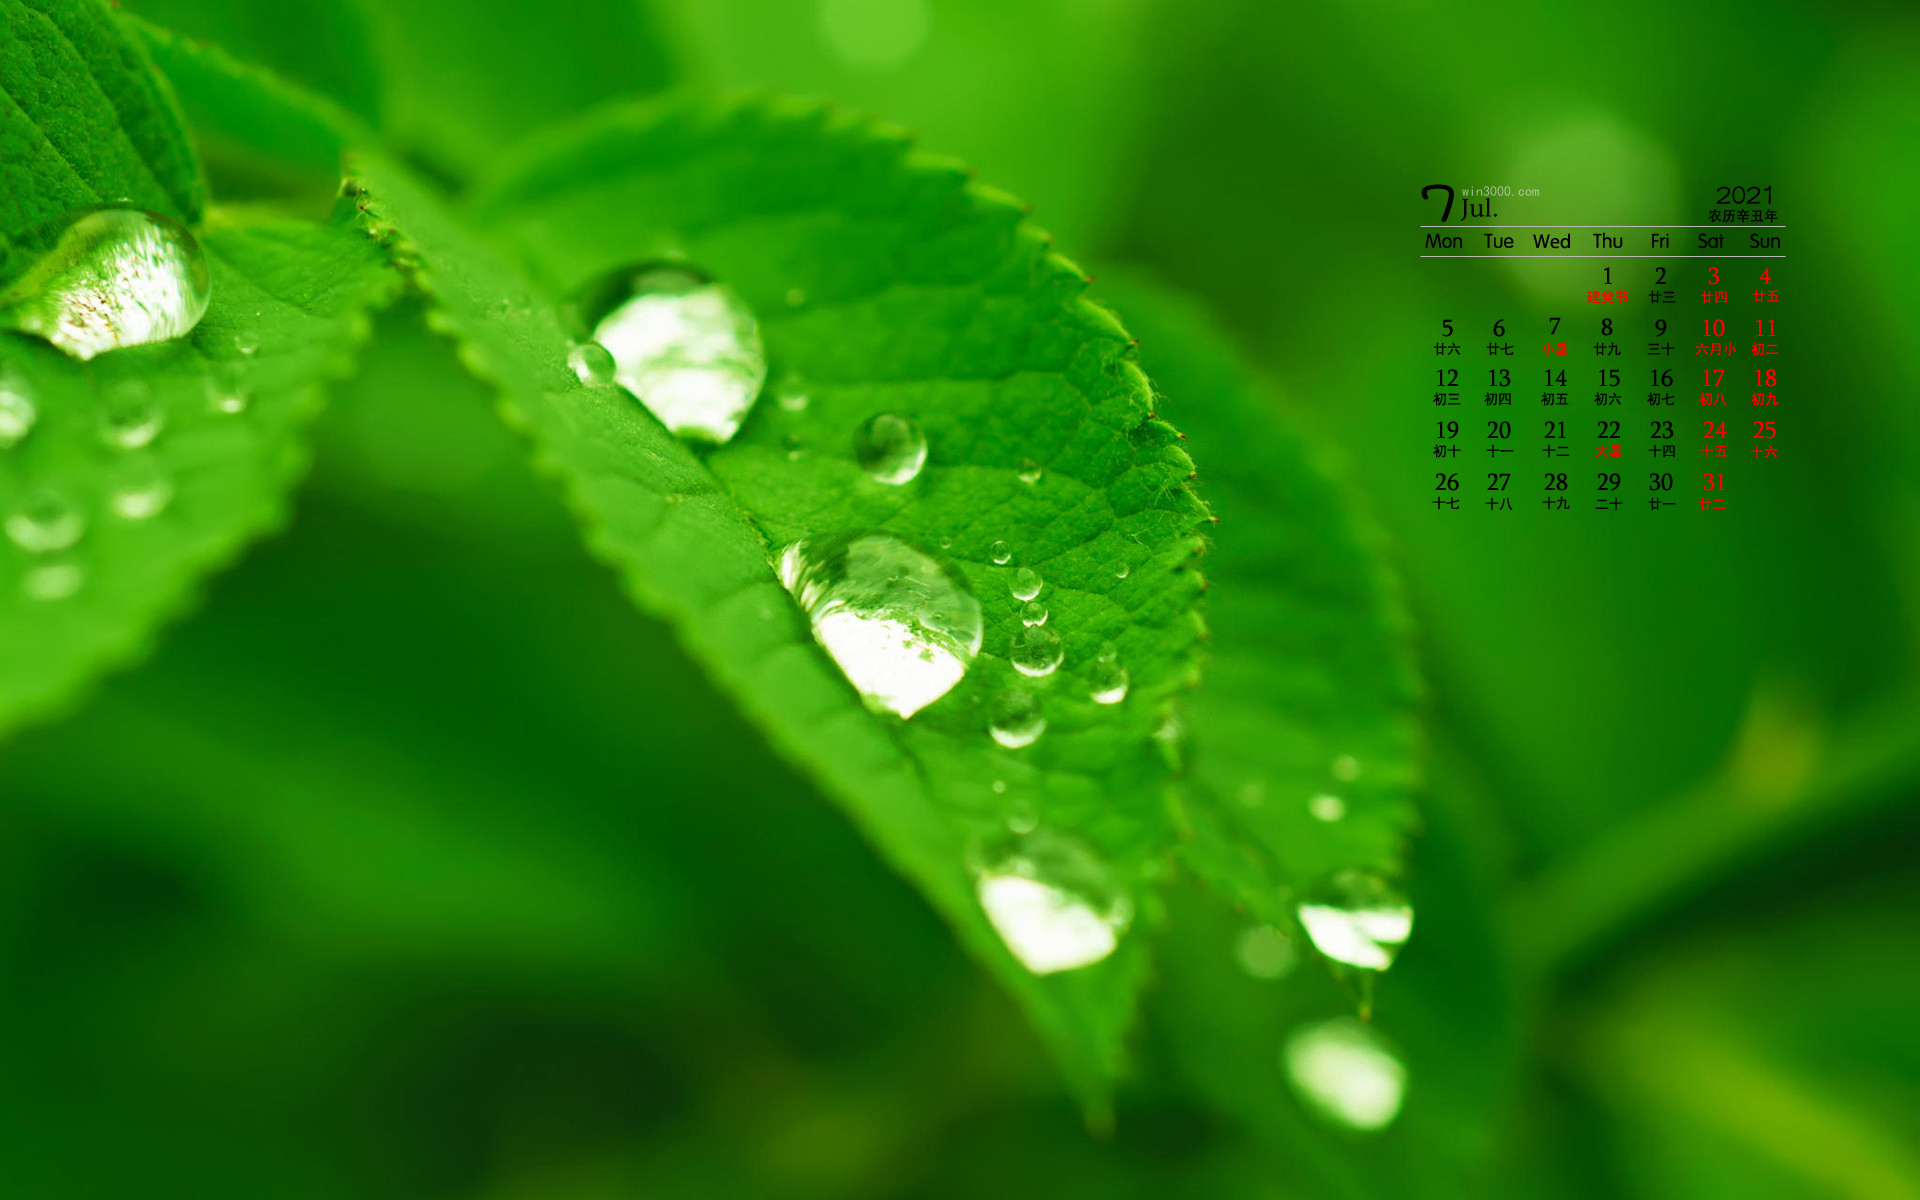 2021年7月翠绿色的树叶水滴桌面日历壁纸